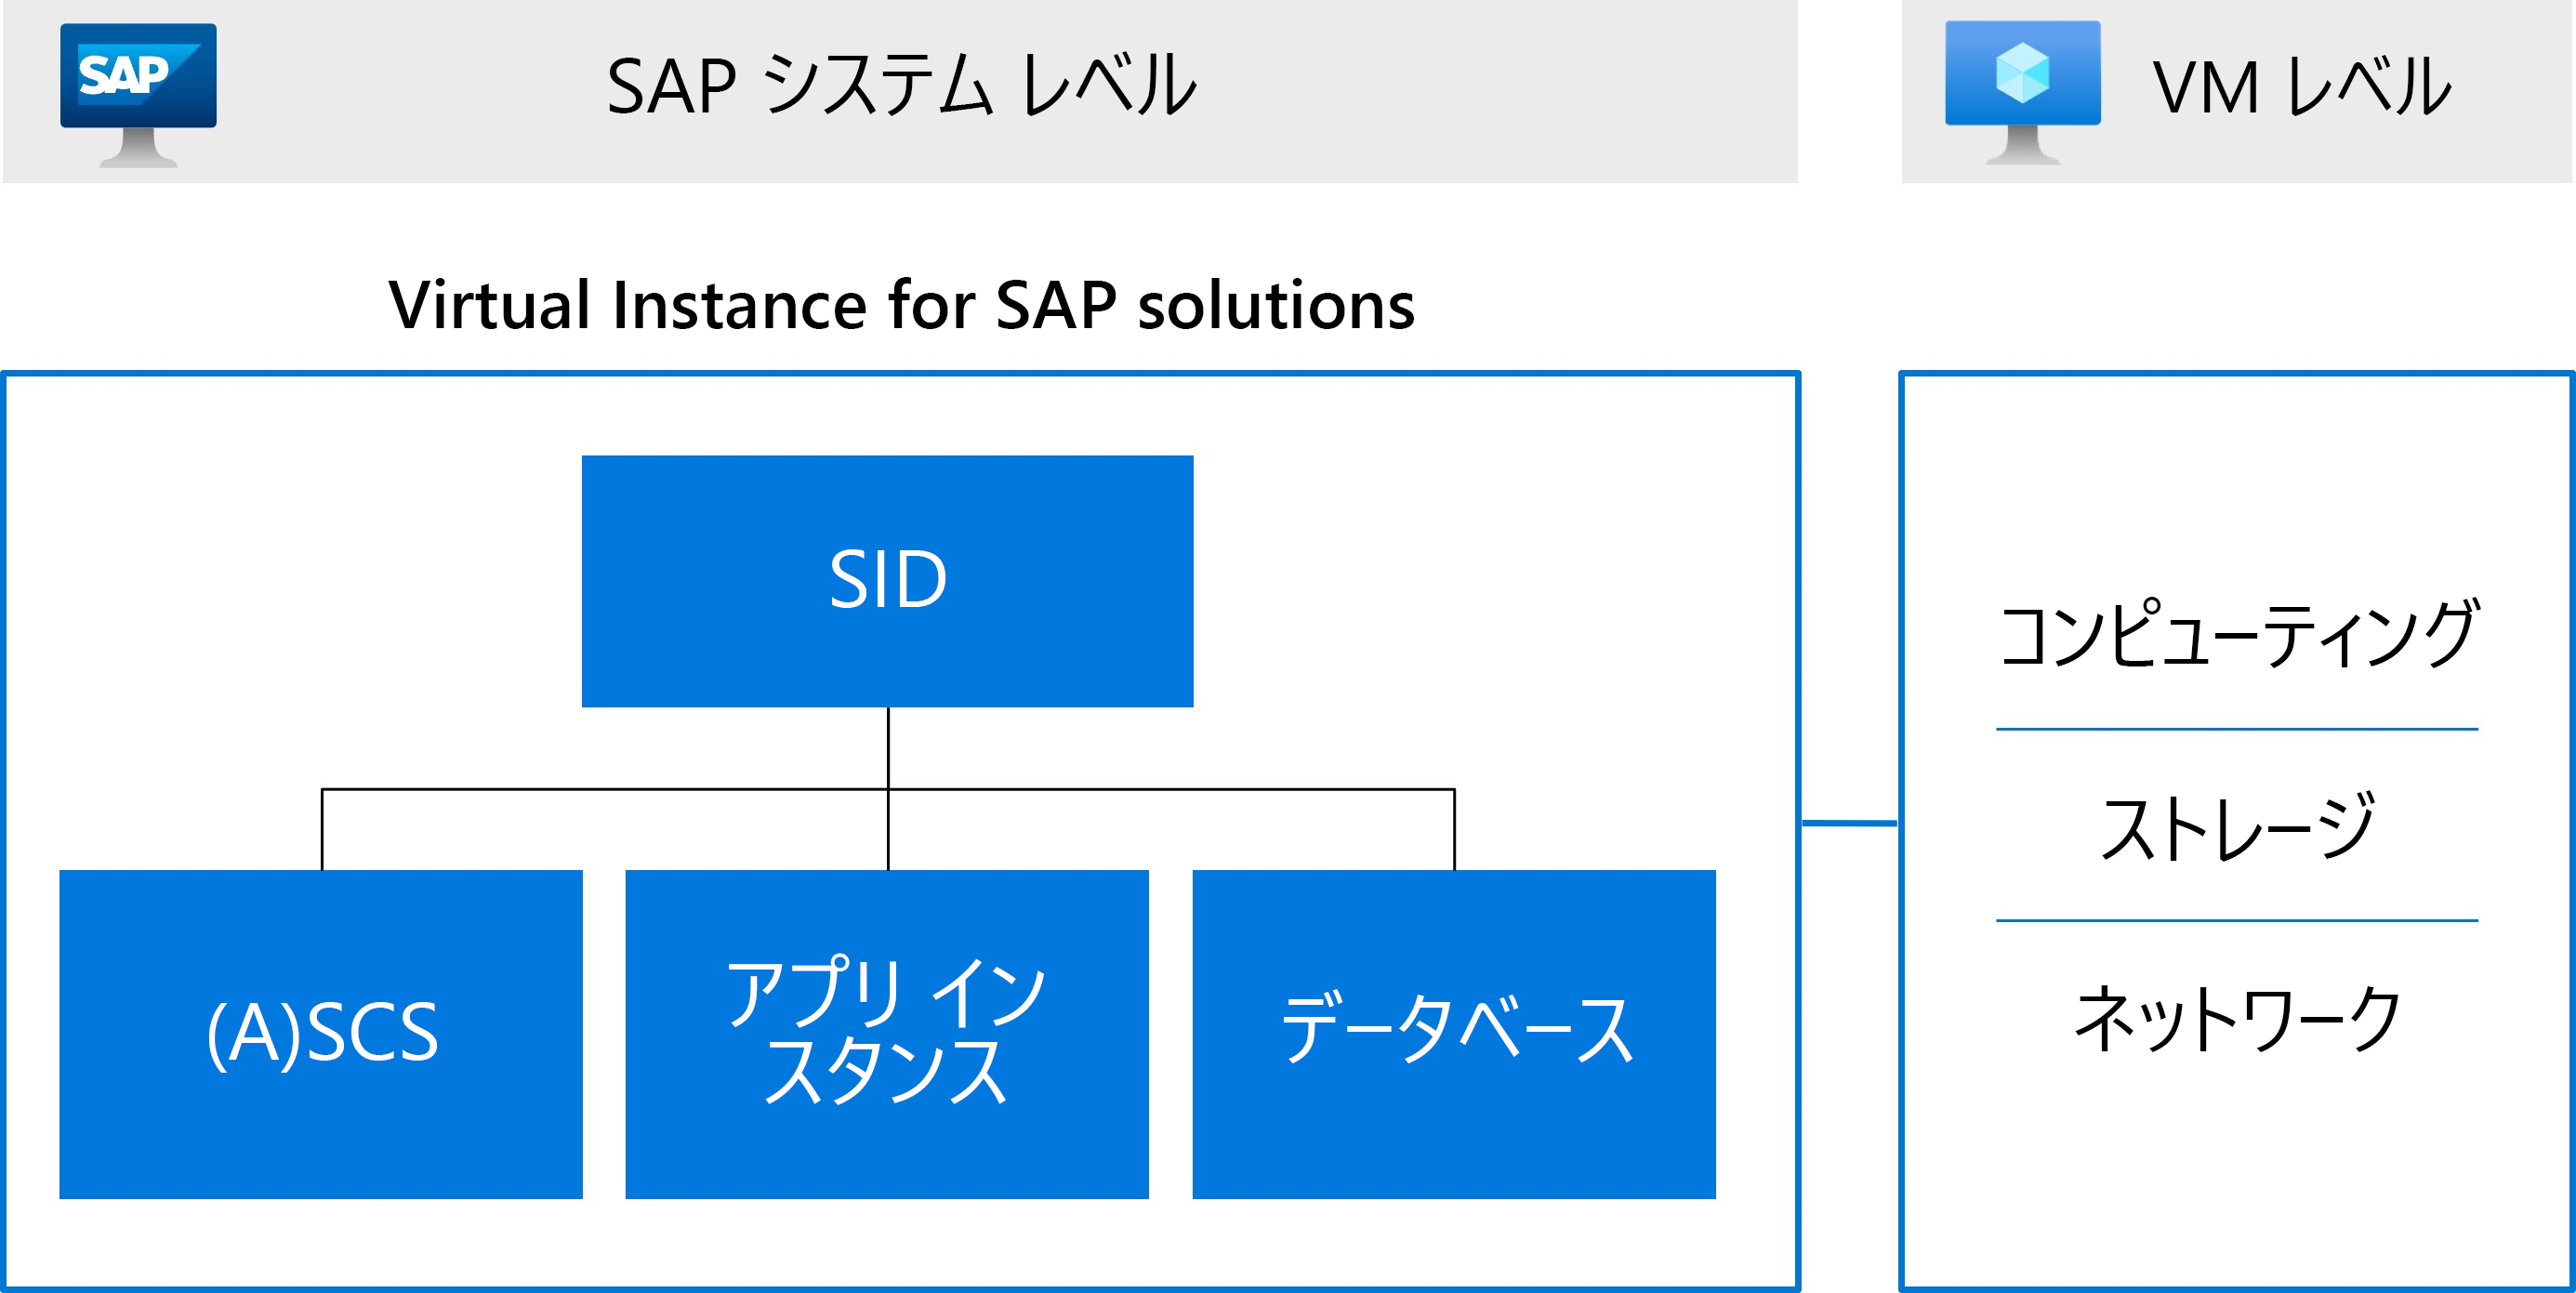 A S C S、アプリケーション サーバー、データベース インスタンスを含む S A P システム識別子を含めた Virtual Instance for S A P solutions を示す図。